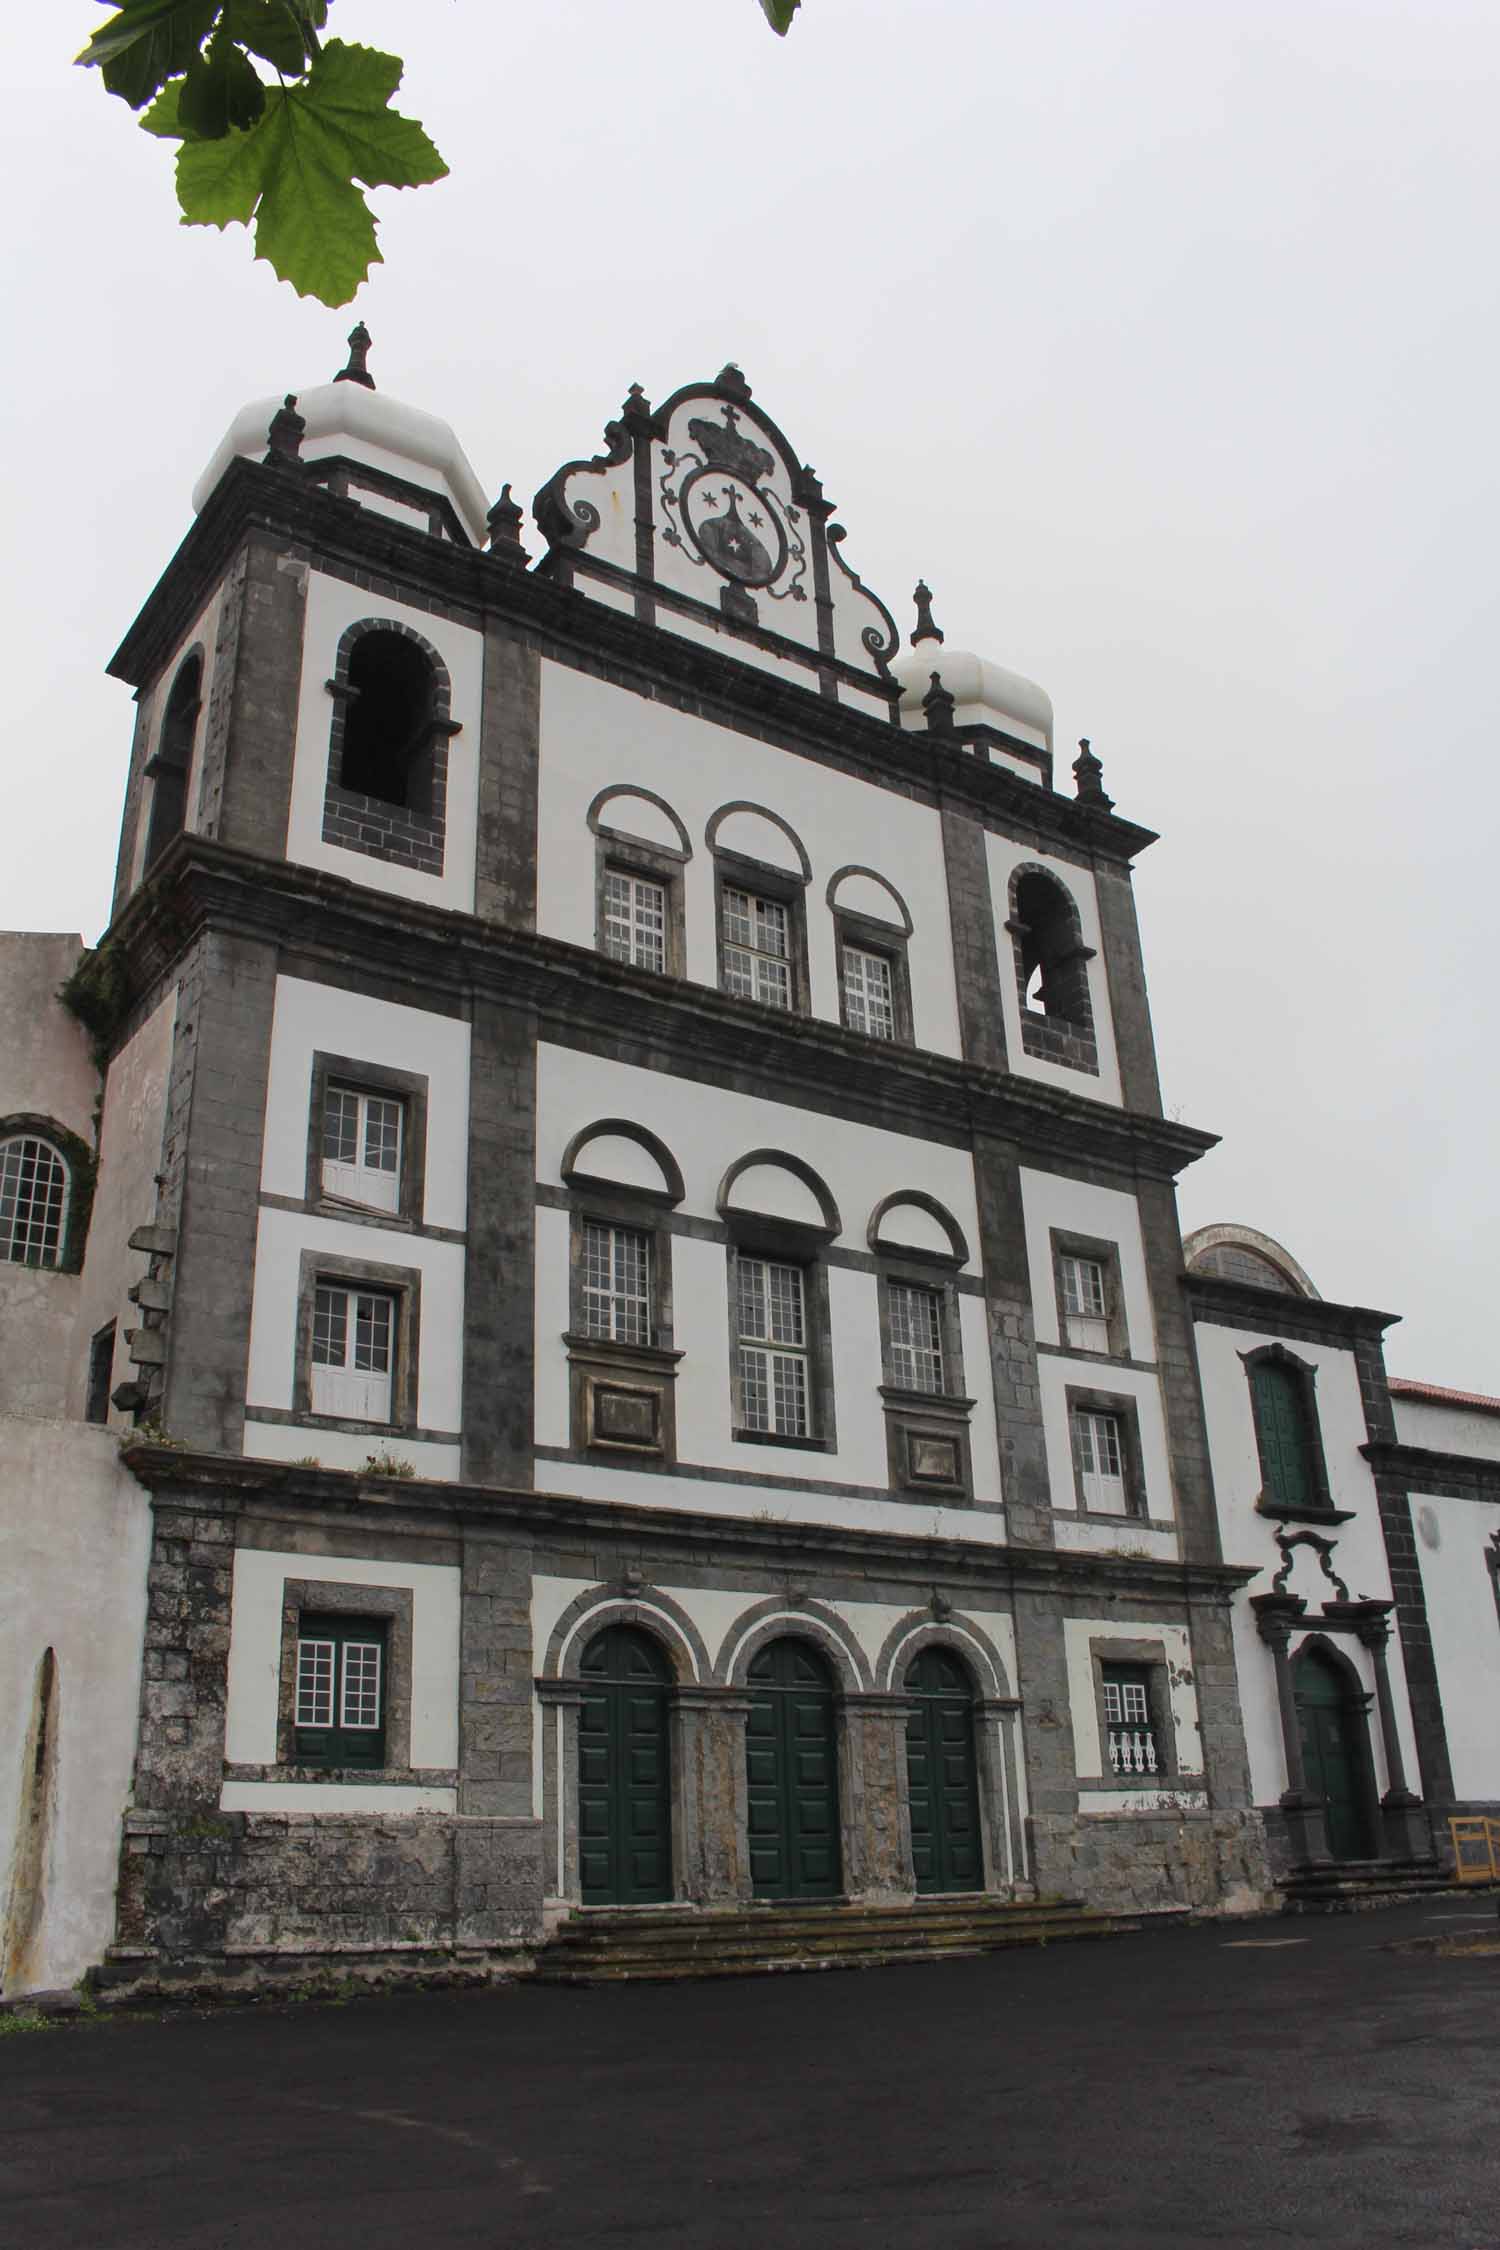 Açores, Île de Faial, Horta, église Nossa Senhora do Carmo